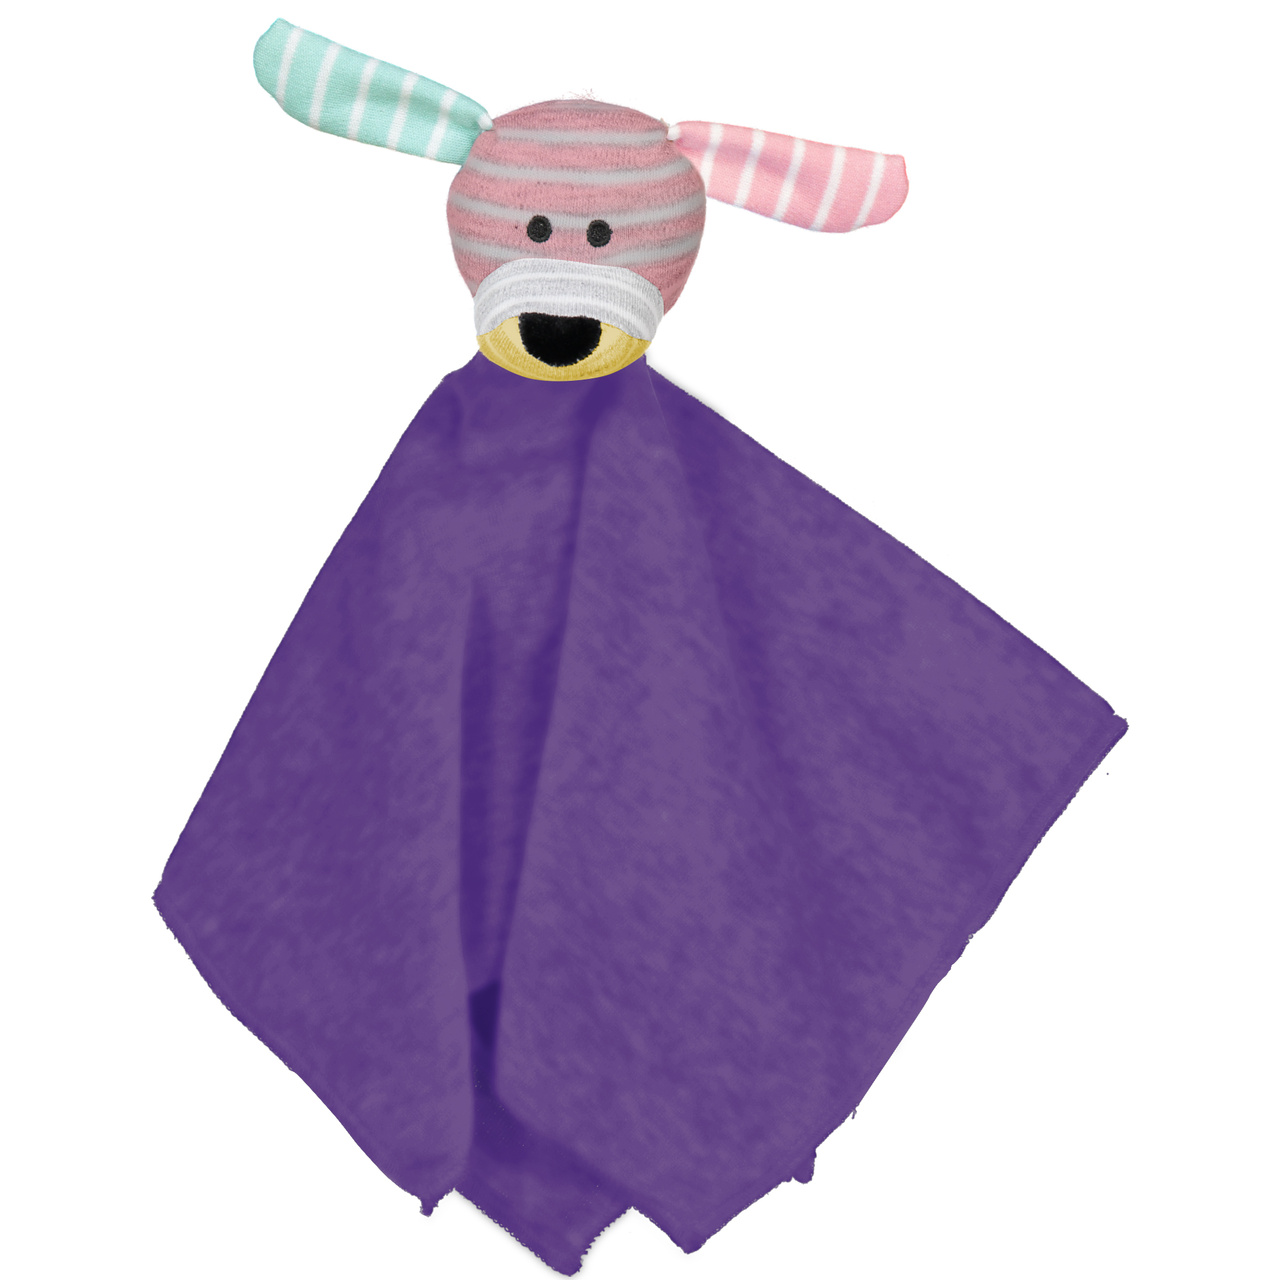 Cuddly toy Doddi Purple